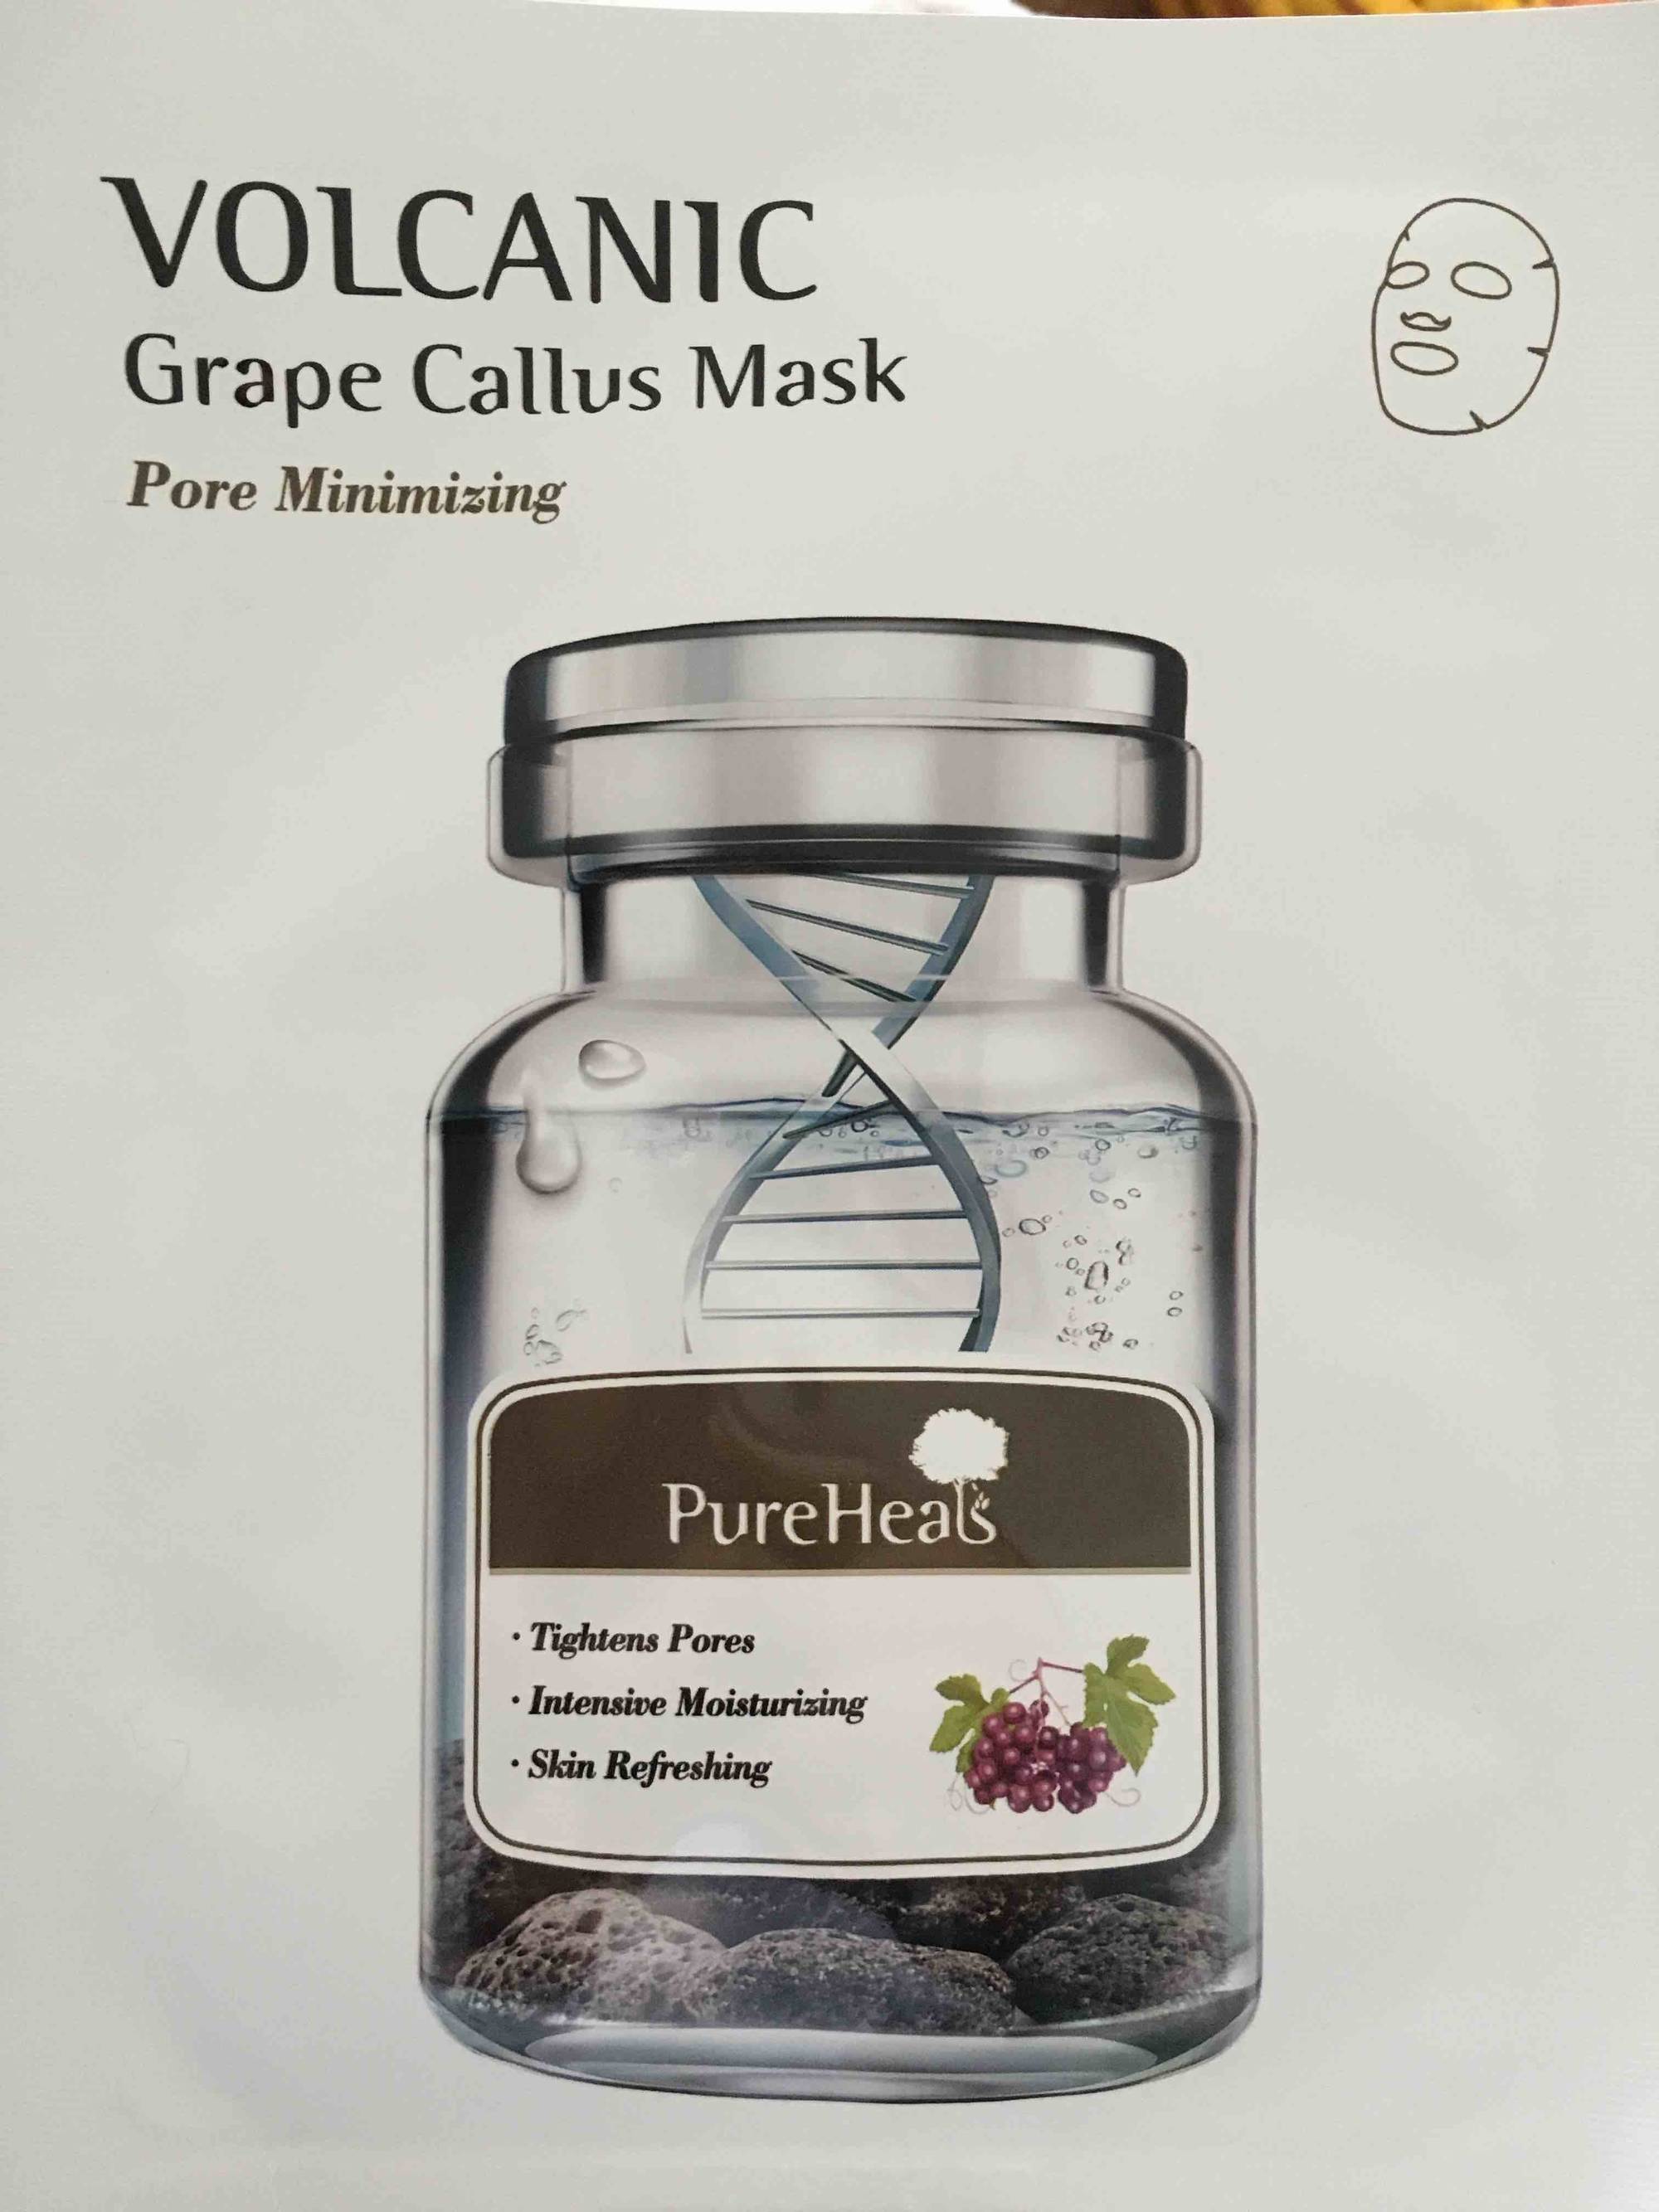 PUREHEALS - Volcanic - Grape callus mask